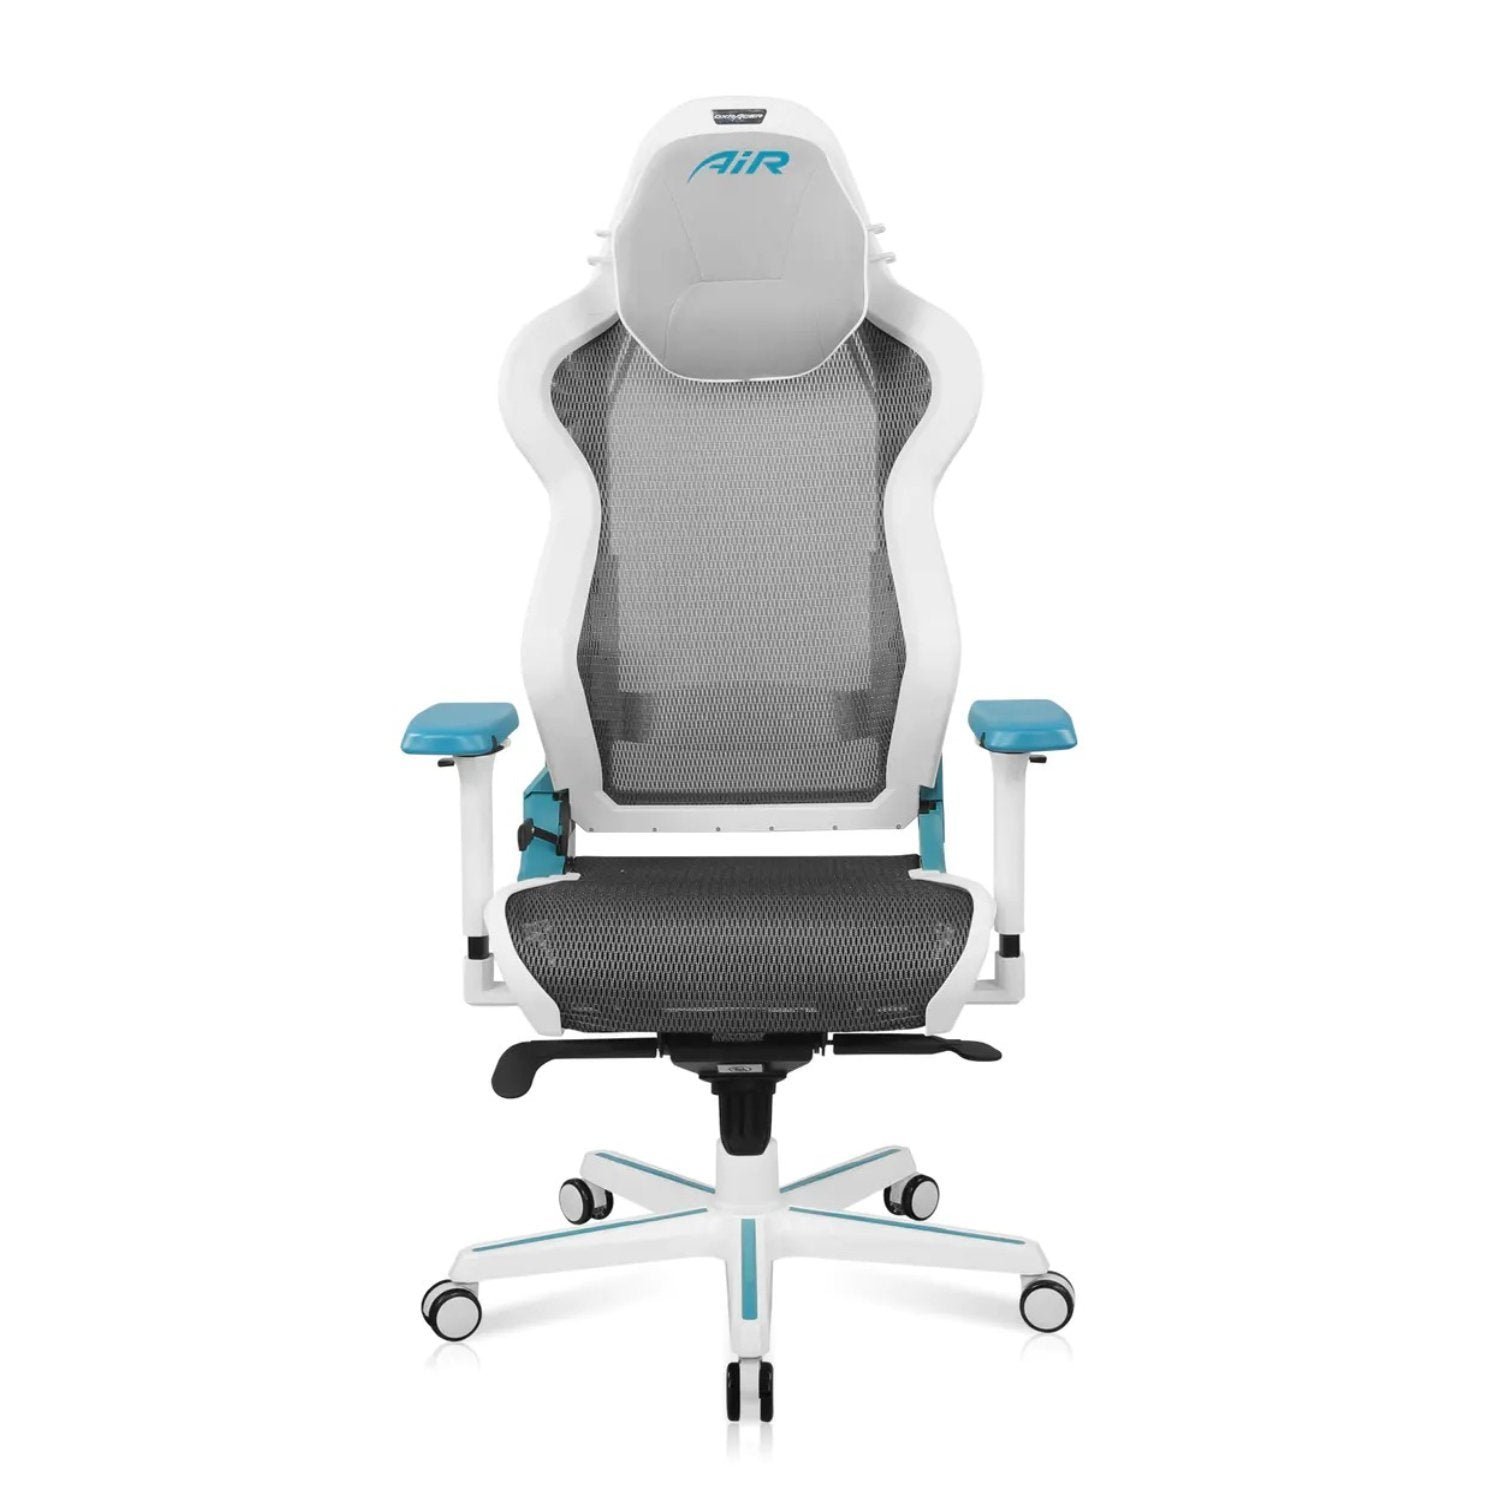 DXRacer Air Series Gaming Chair - White/Cyan - Store 974 | ستور ٩٧٤